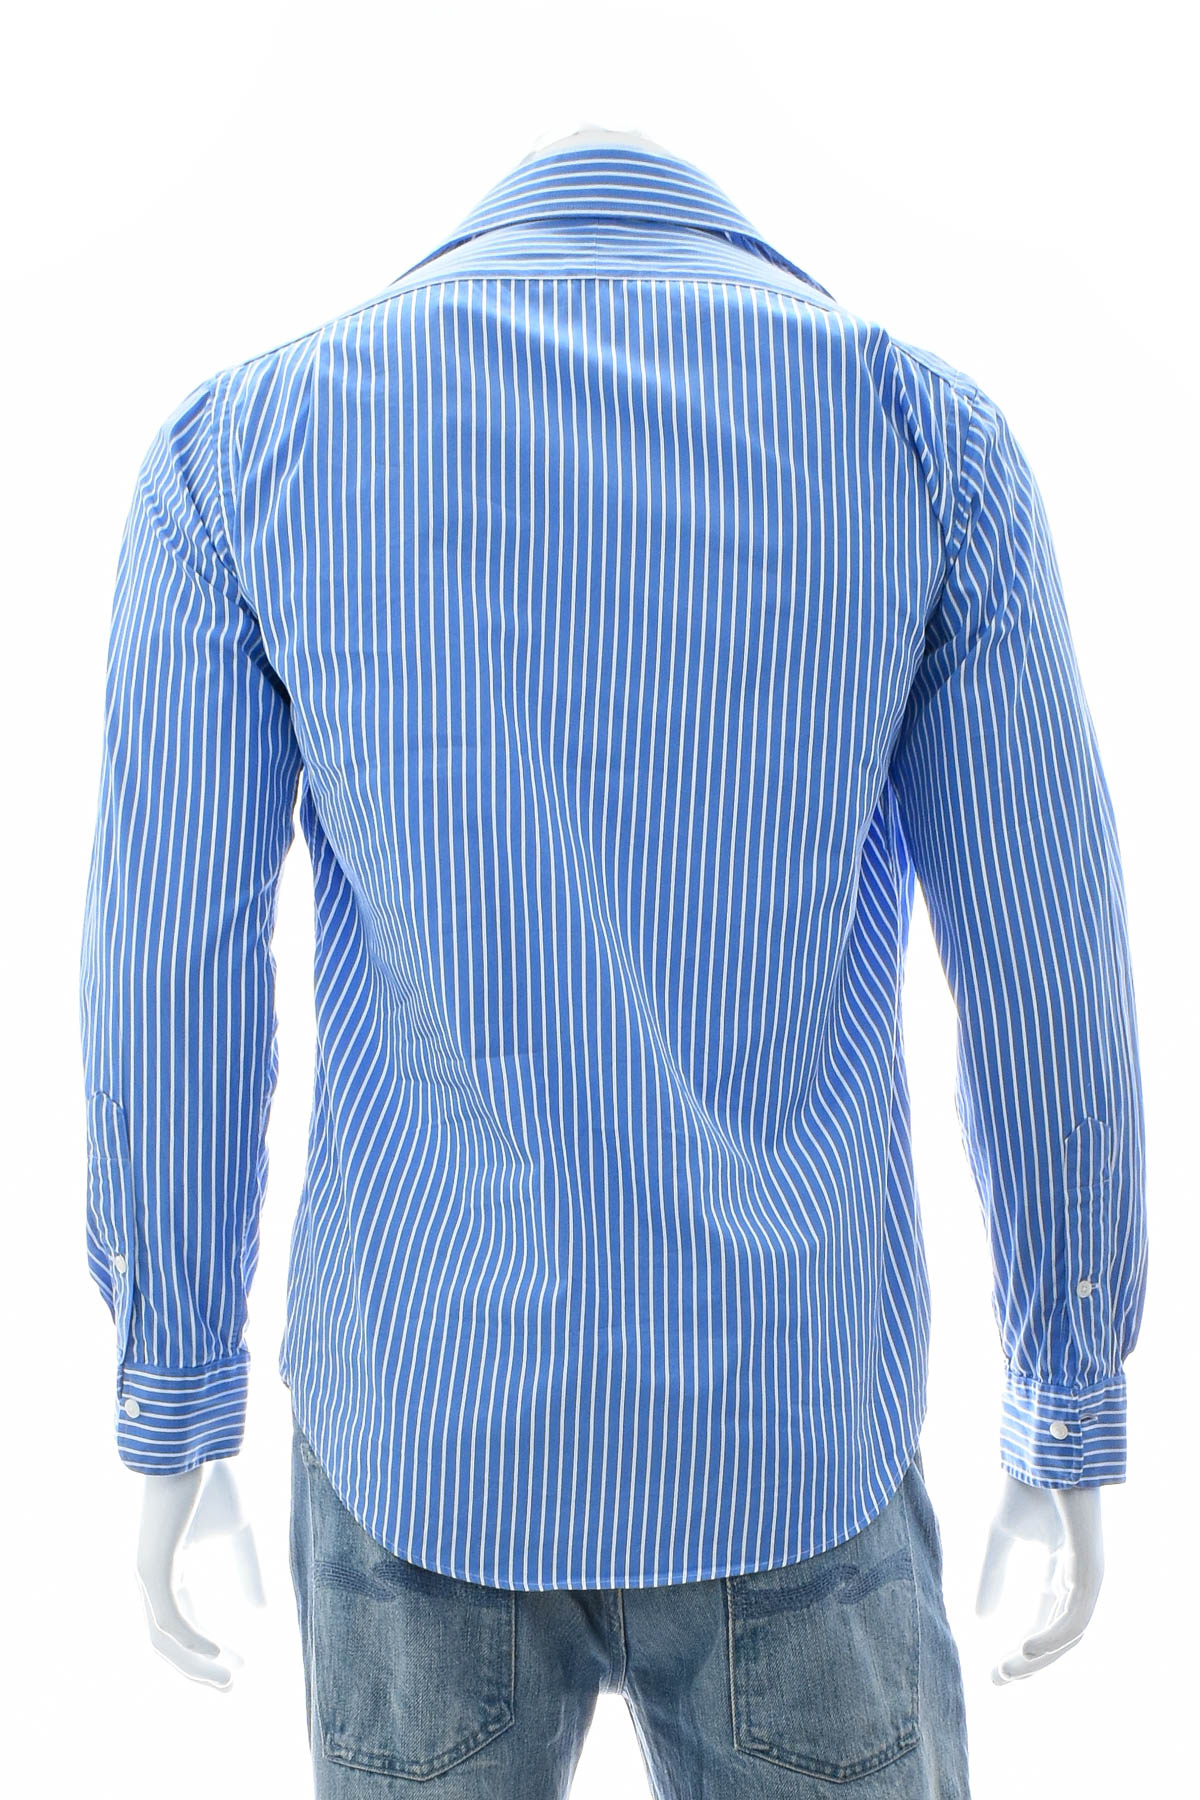 Men's shirt - POLO RALPH LAUREN - 1